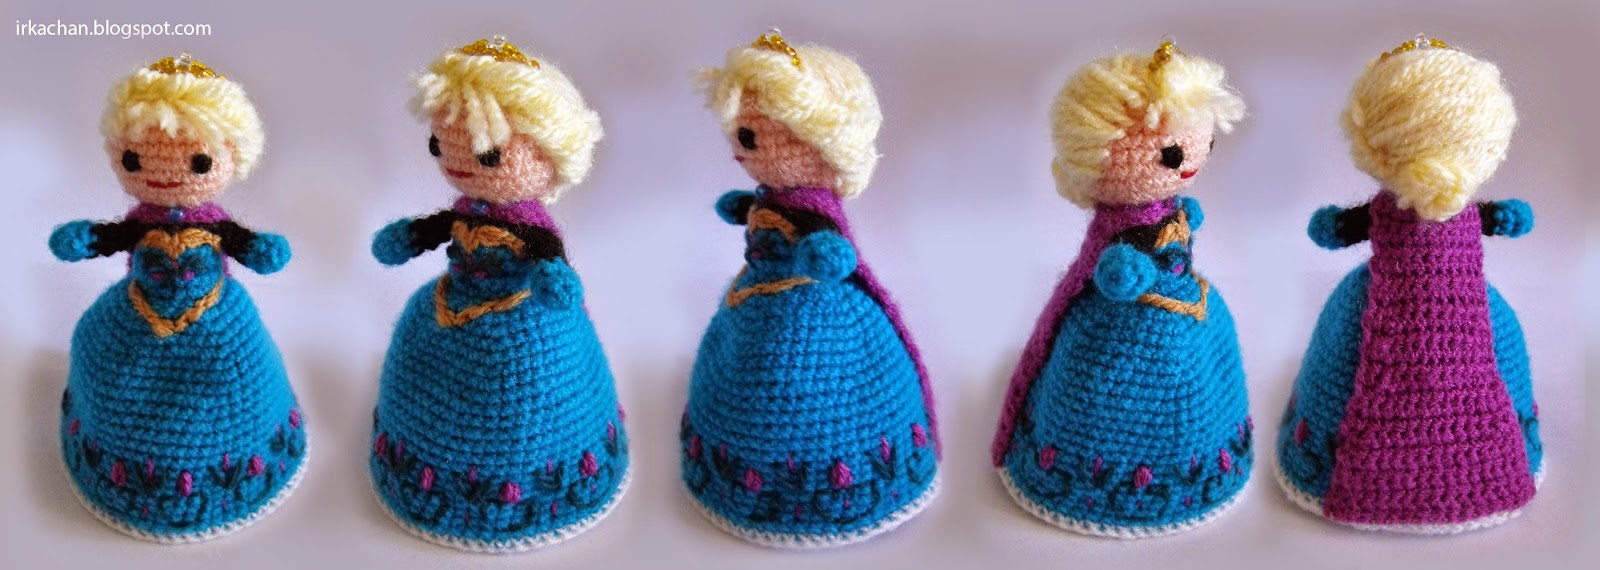 Tejido a crochet : septiembre 2014